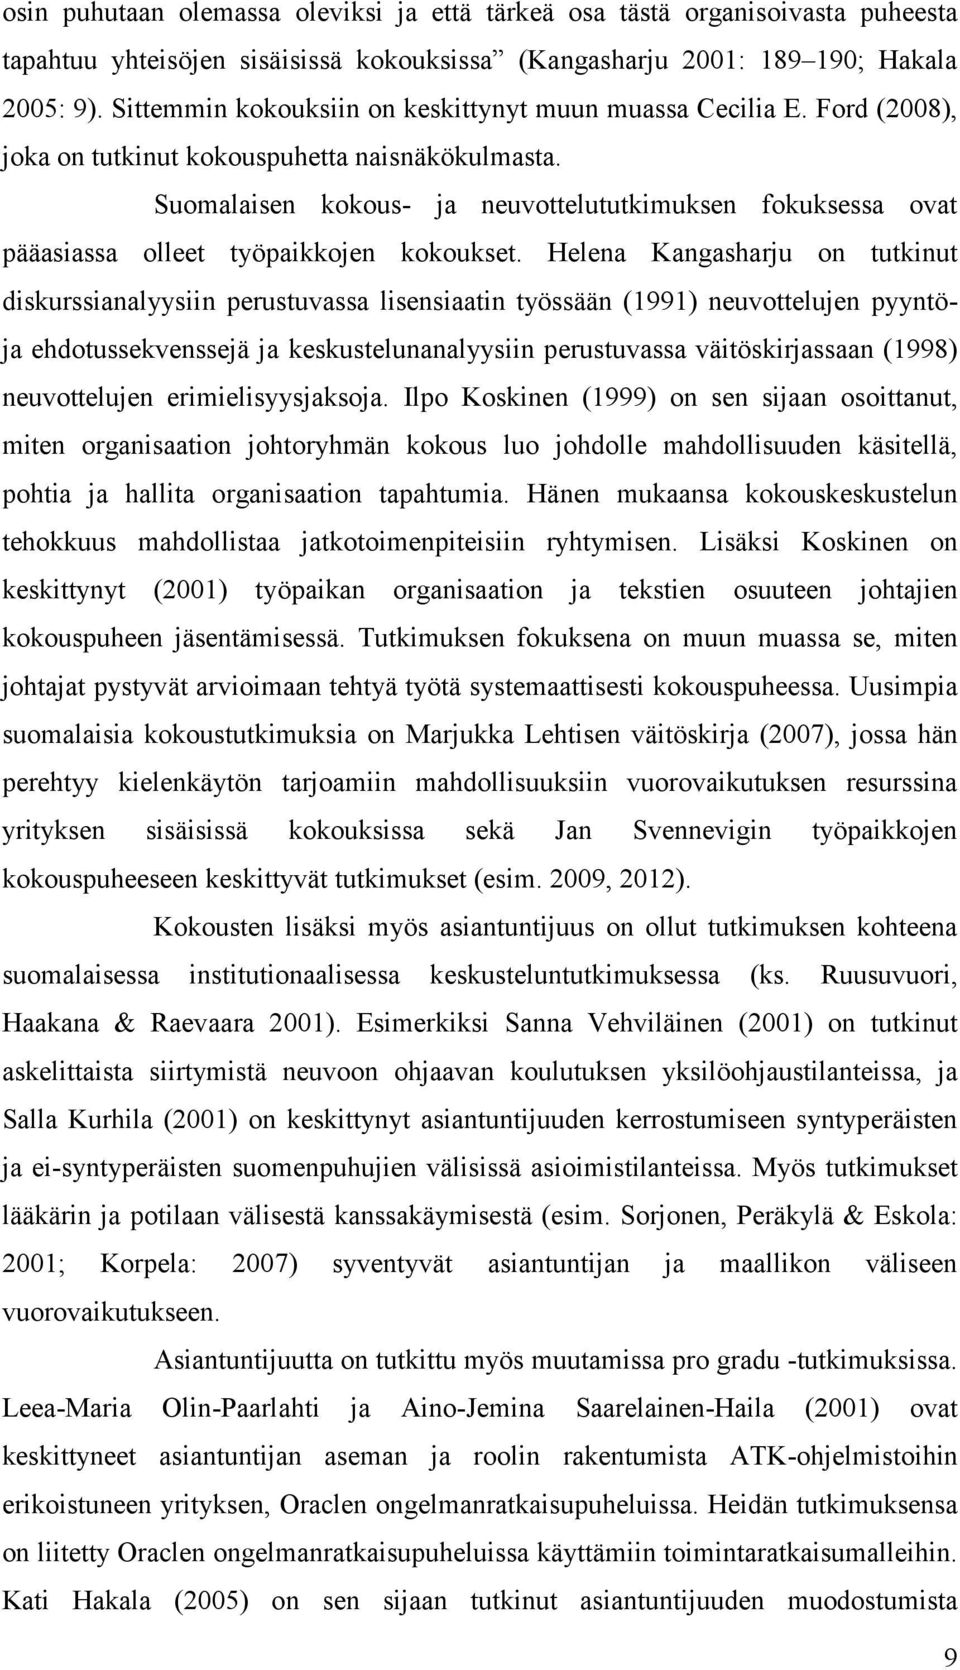 Suomalaisen kokous- ja neuvottelututkimuksen fokuksessa ovat pääasiassa olleet työpaikkojen kokoukset.